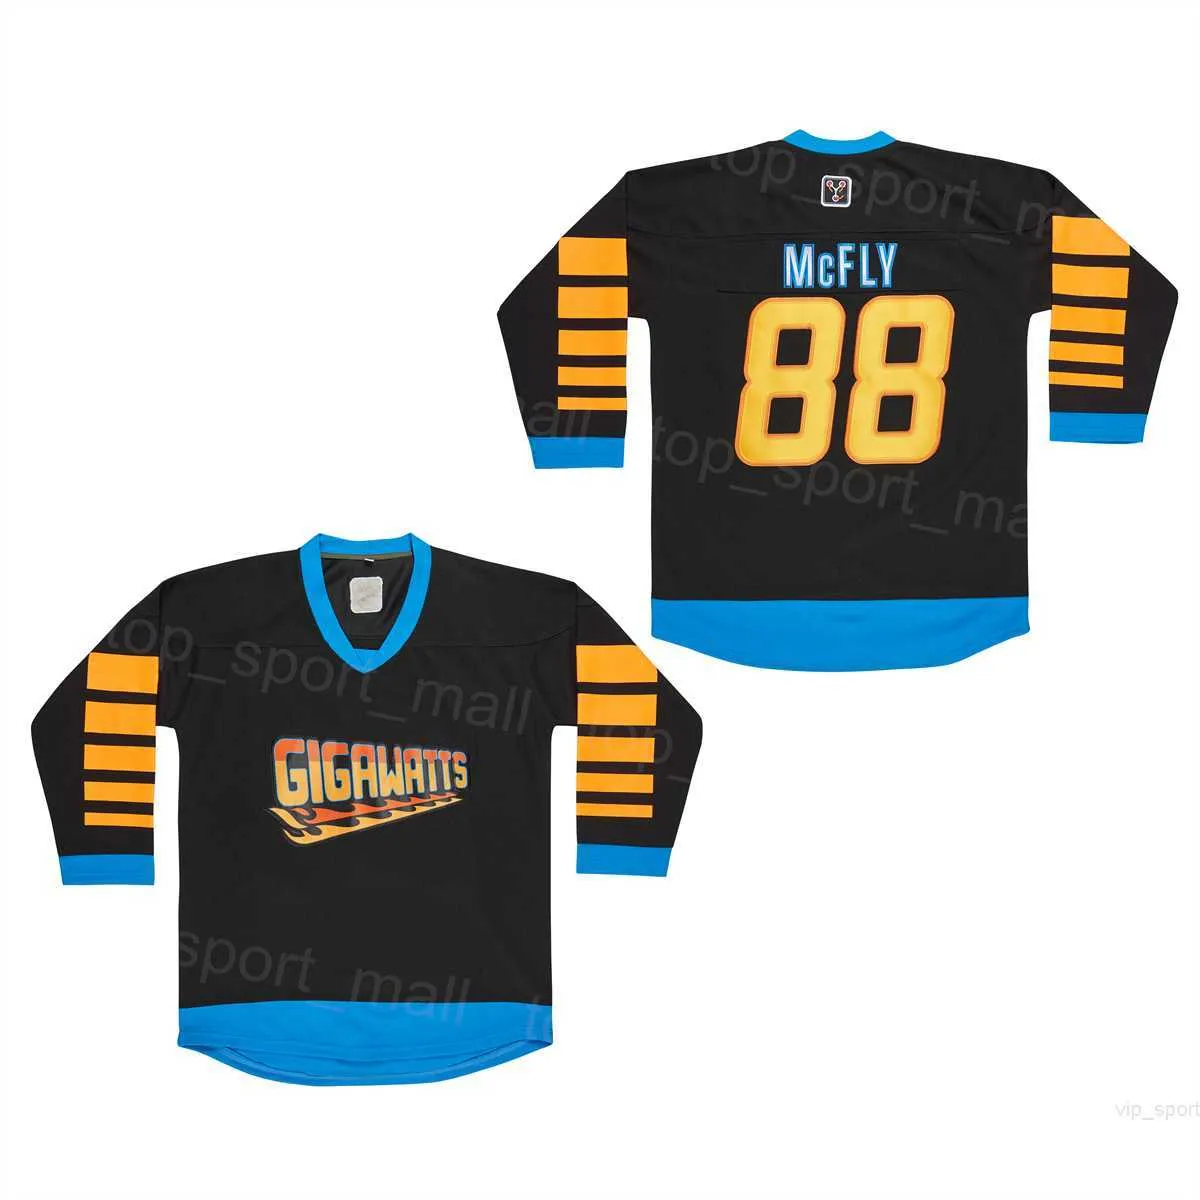 영화 하키 gigawatts 88 Marty McFly Jerseys 미래 대학 팀 컬러 스포츠 팬을위한 검은 빈티지 자수 통기 가능한 풀오버 대학 남자 판매